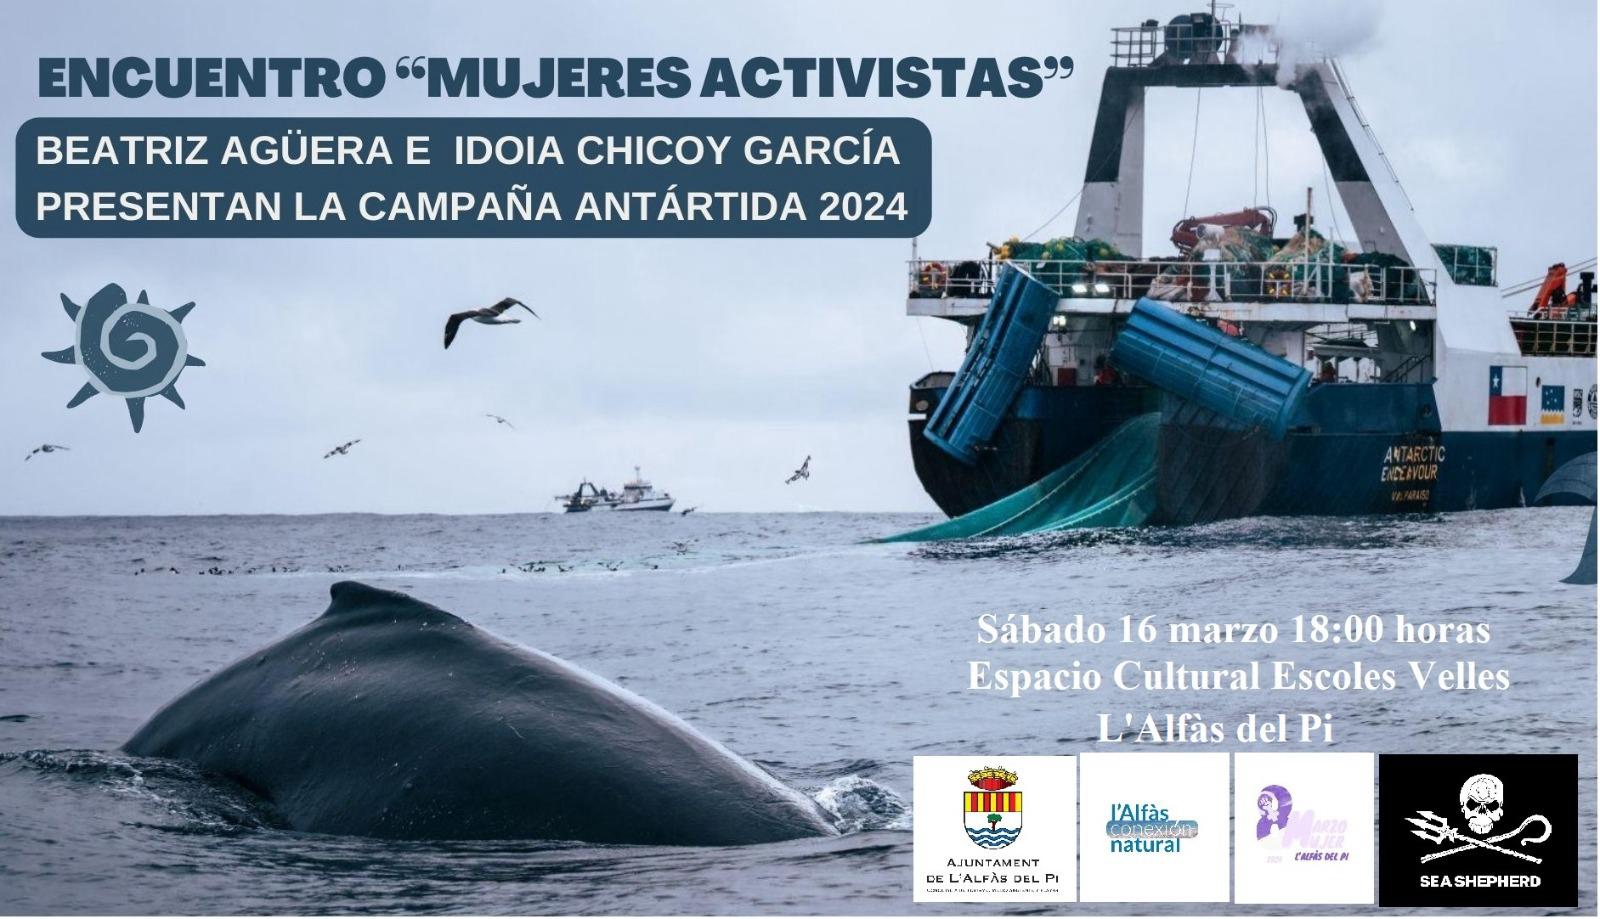 Las activistas de Sea Shepherd Idoia Chicoy y Beatriz Agüera participan este sábado en un encuentro en l’Alfàs